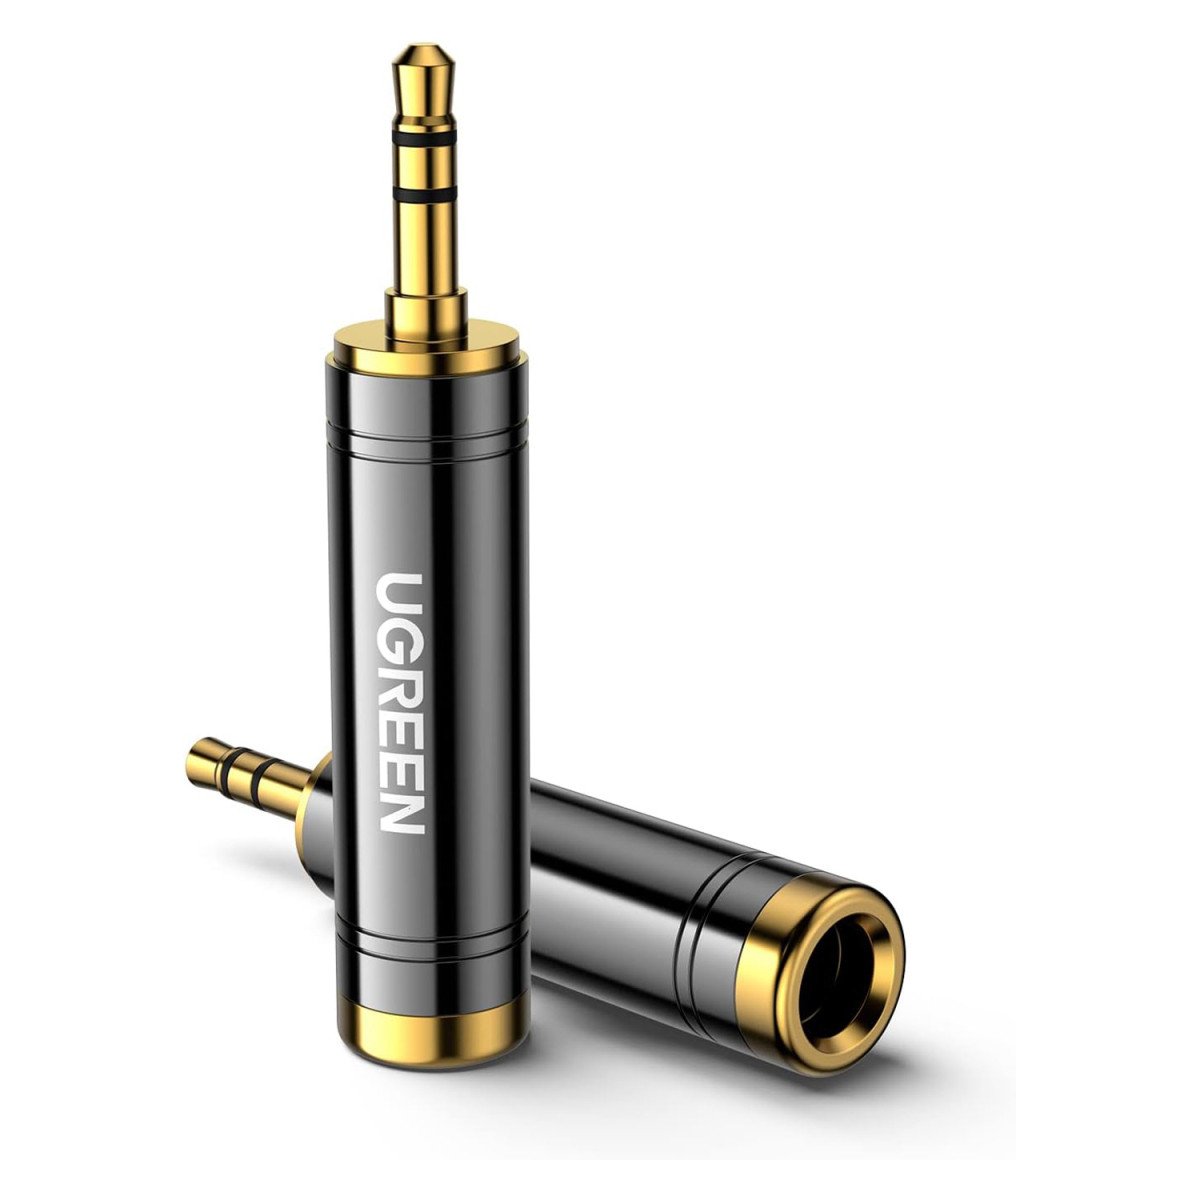 Аудіо адаптер UGREEN AV168 3.5mm Male to 6.35mm Female Adapter 1pcs Black (60711)